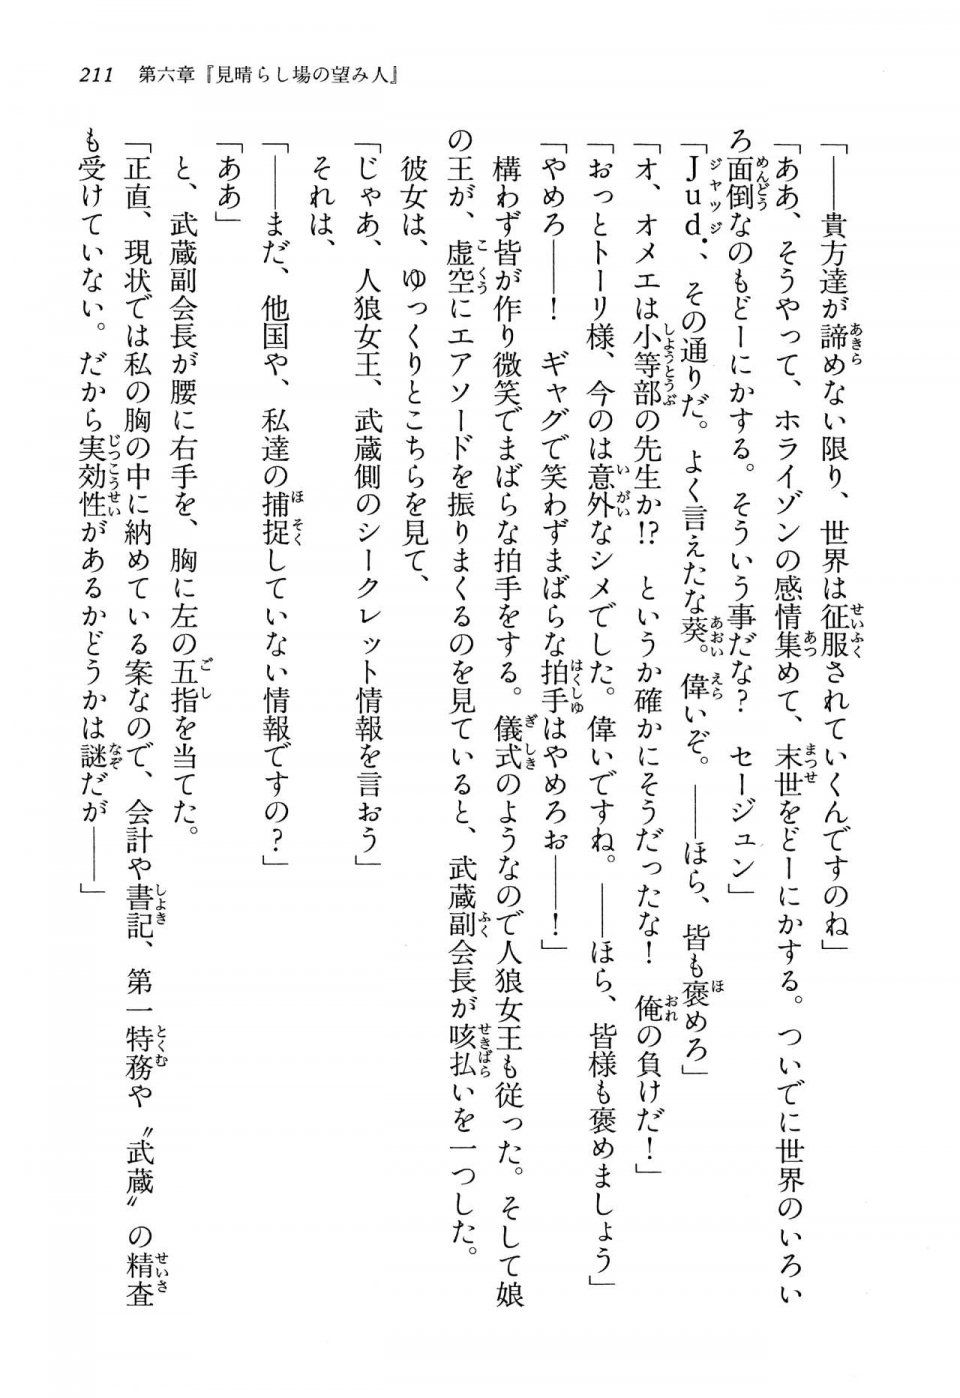 Kyoukai Senjou no Horizon LN Vol 13(6A) - Photo #211